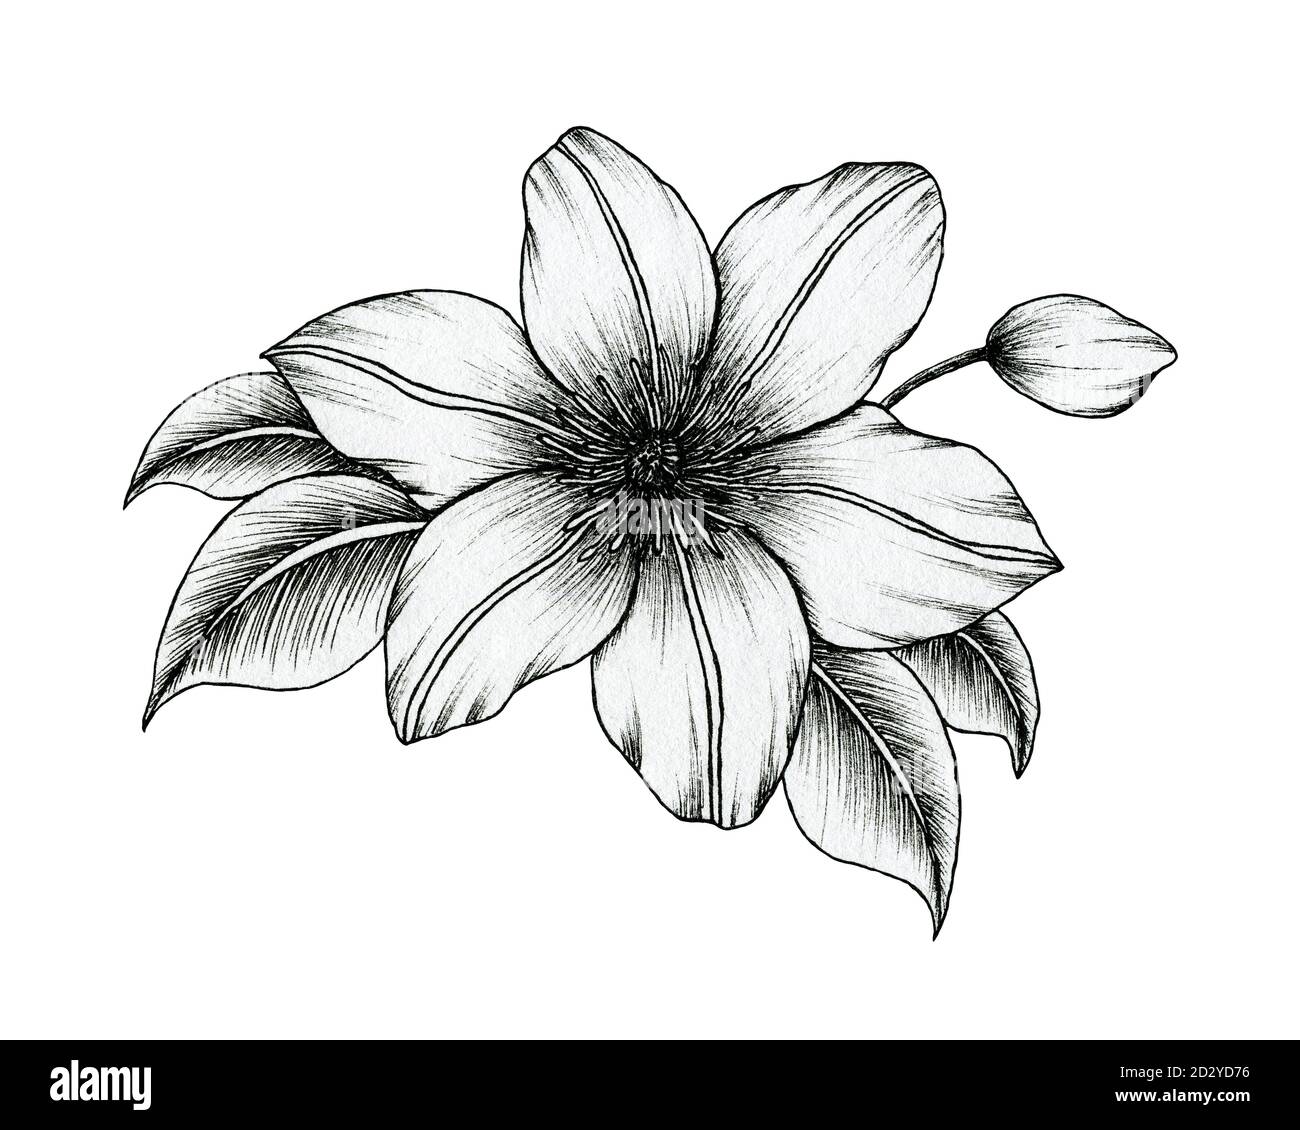 Sketch Floral Botany Set Stock Illustration  Download Image Now  Flower  Line Art Illustration  iStock